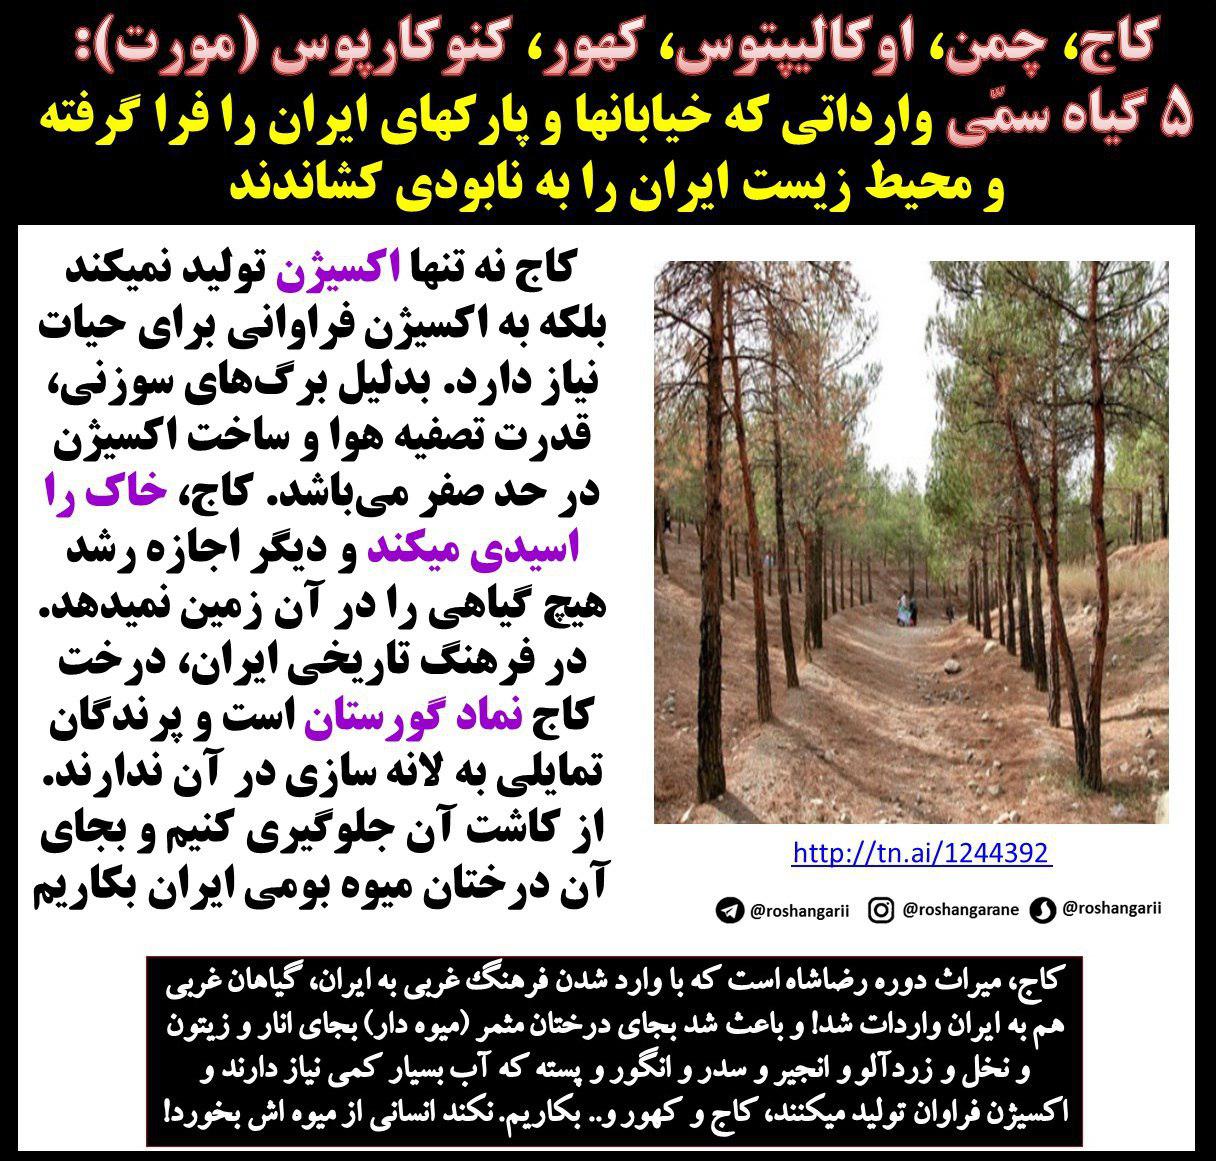 ۵ گیاه سمی و نابود کننده محیط زیست ایران